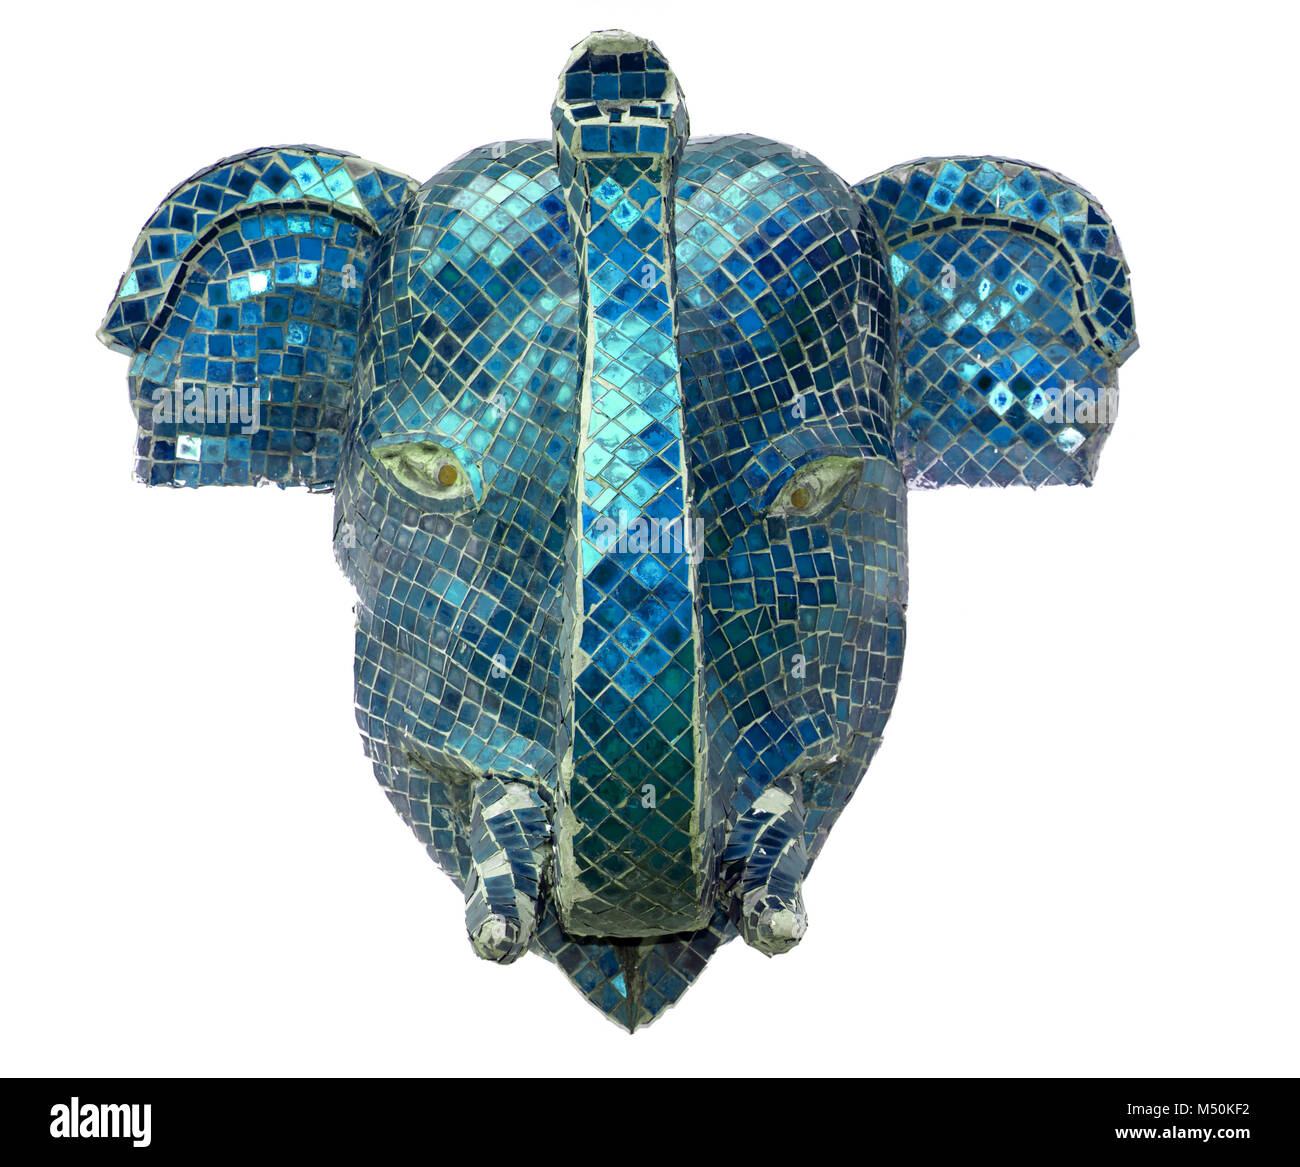 Blue Elephant Head isolé sur un fond blanc. La tête de l'éléphant se tourne vers l'avenir. Banque D'Images